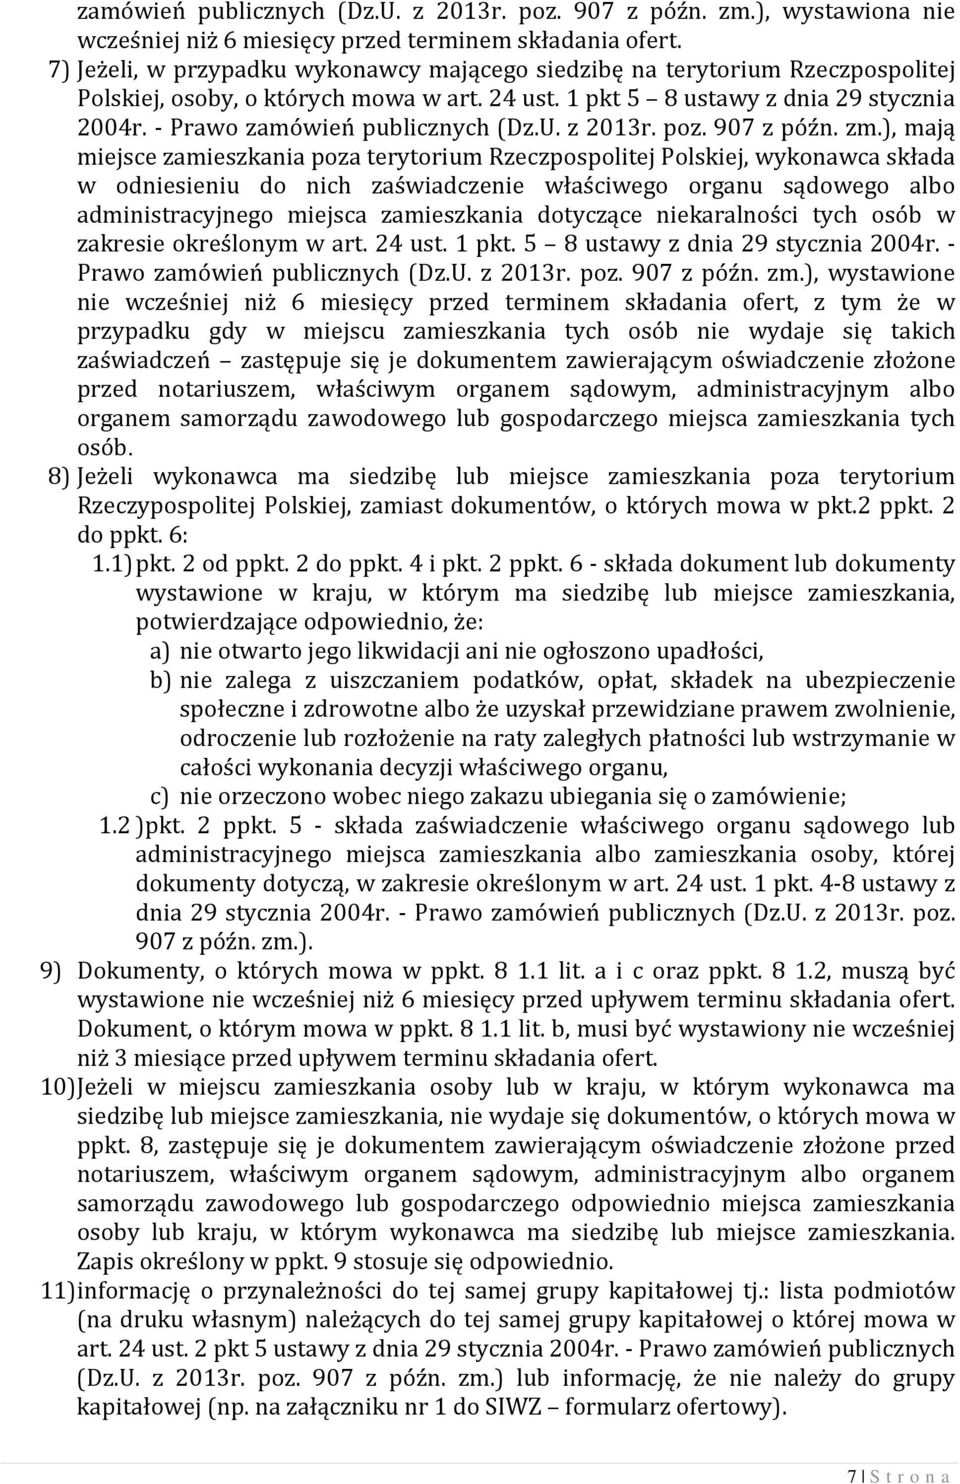 - Prawo zamówień publicznych (Dz.U. z 2013r. poz. 907 z późn. zm.